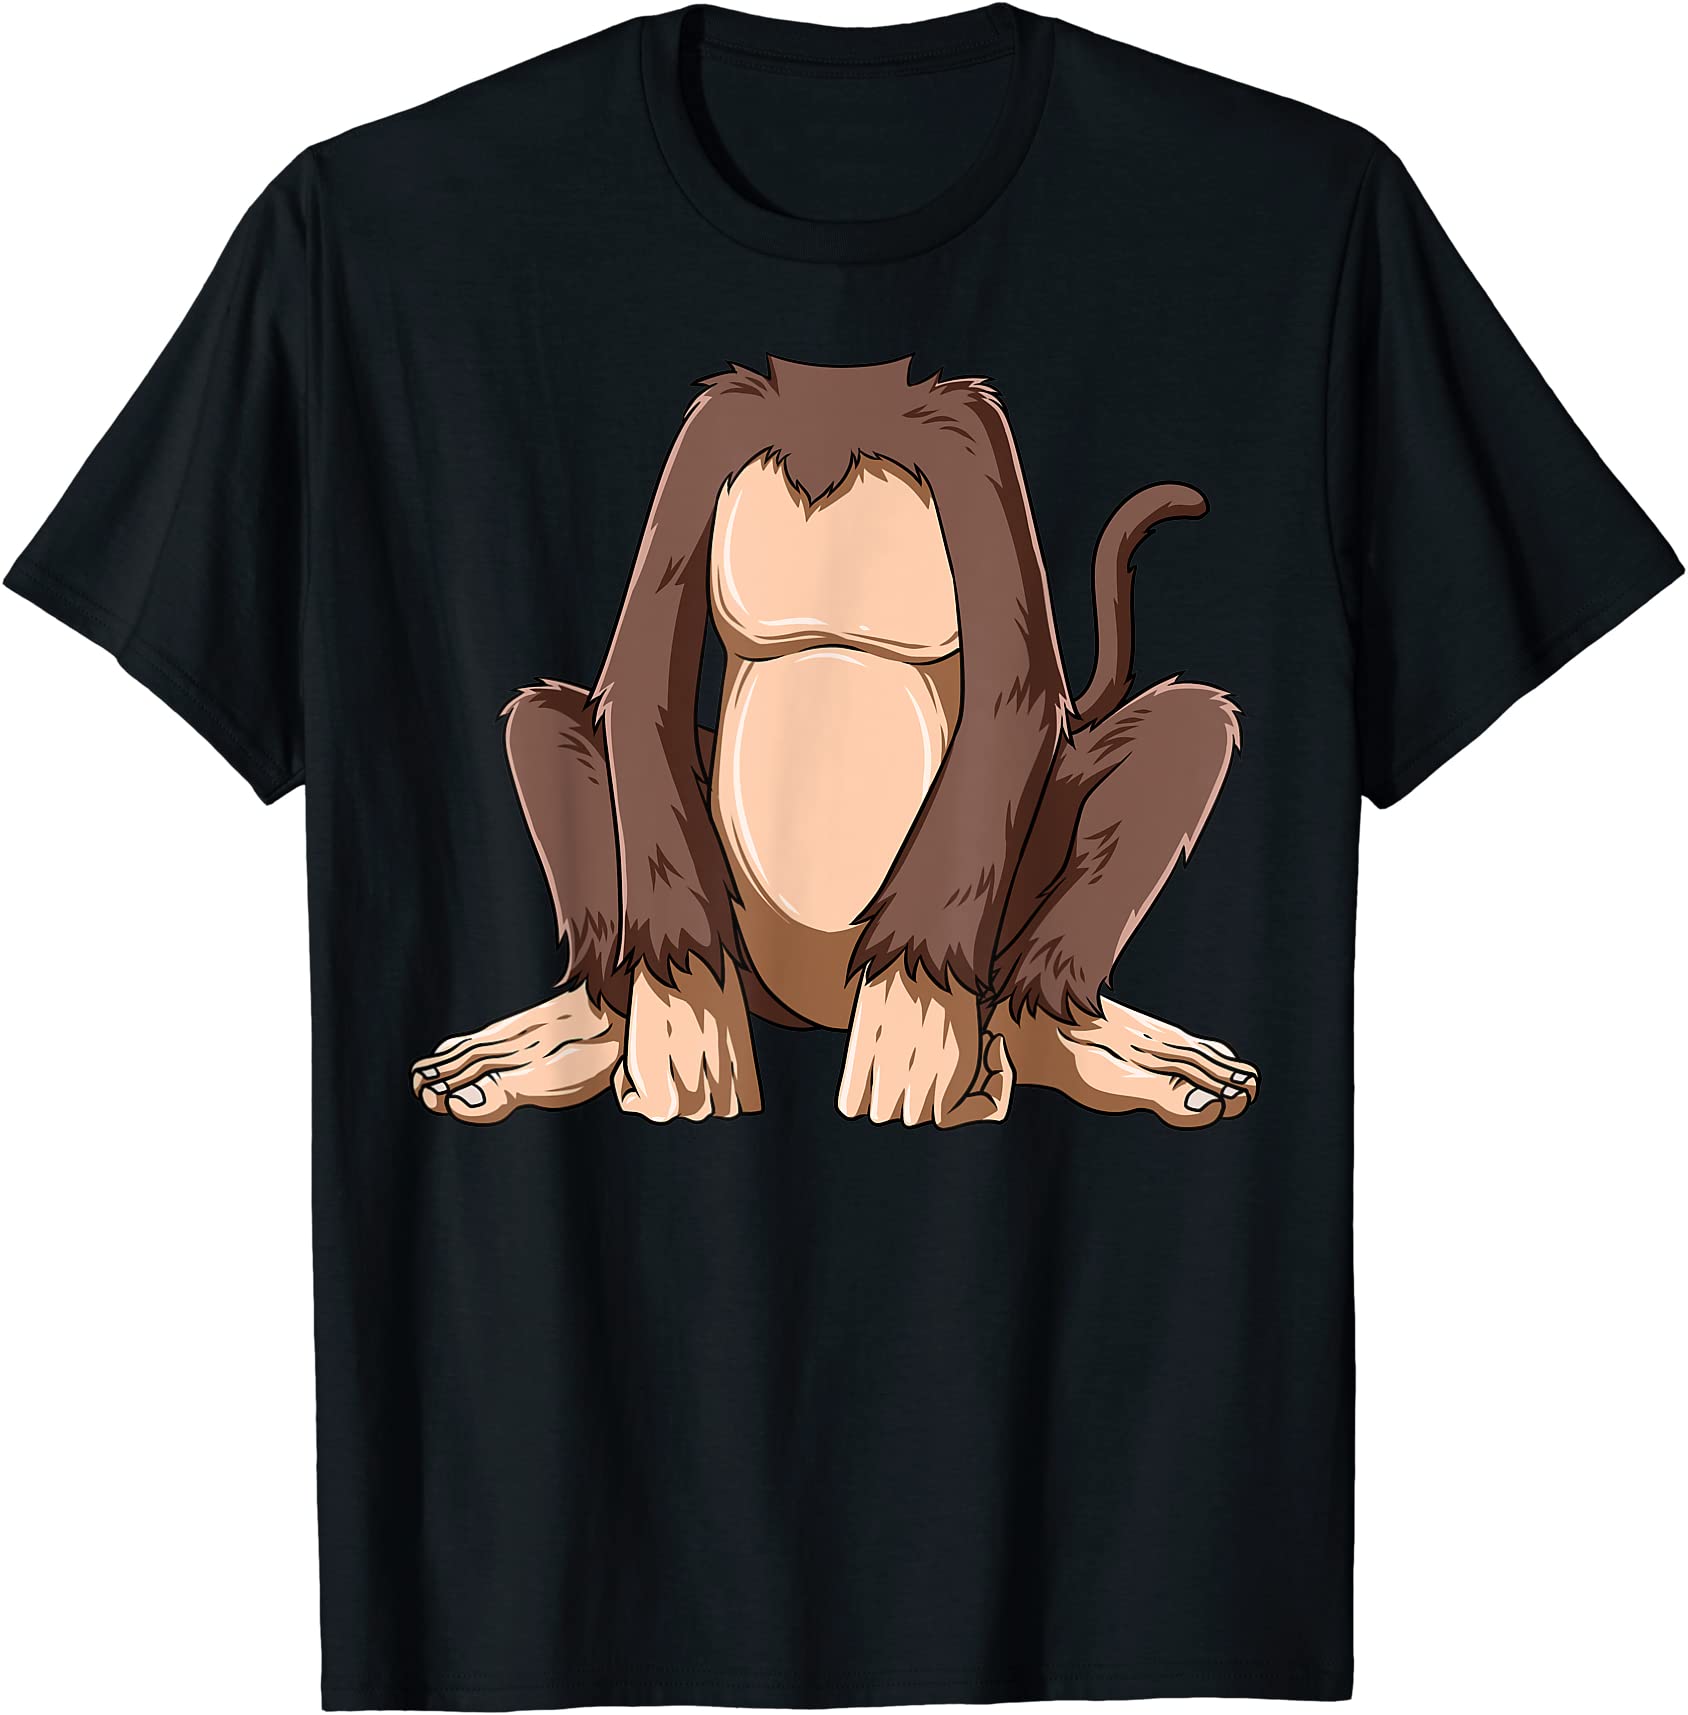 easy monkey costume monkey body headless monkey costume t shirt men ...